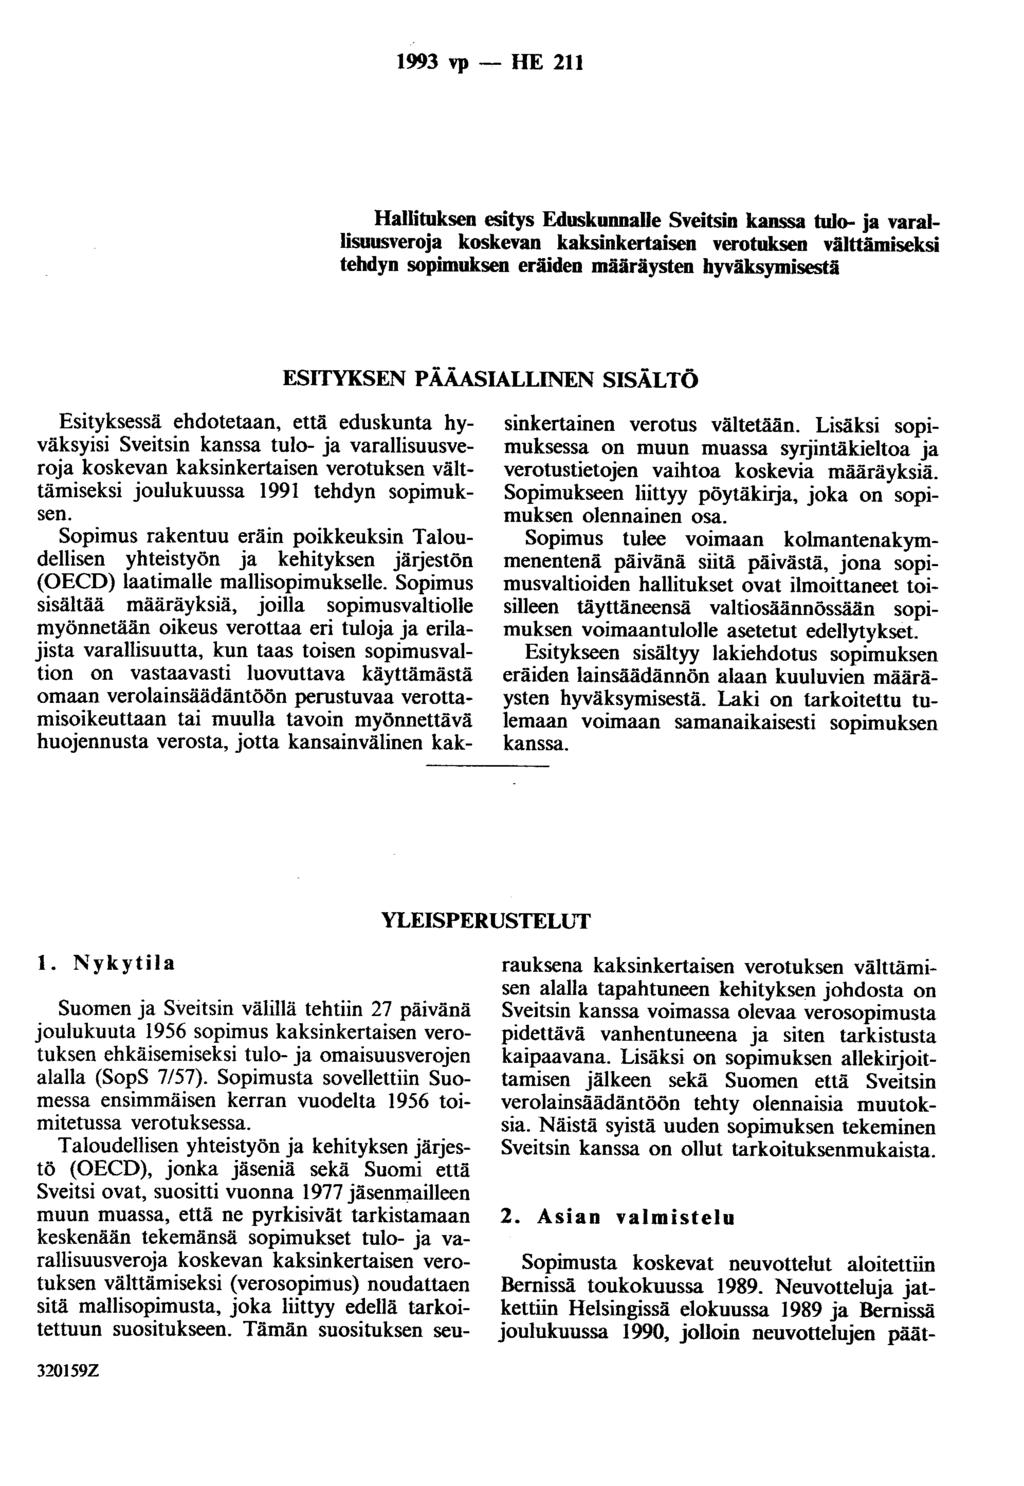 1993 vp - HE 211 Hallituksen esitys Eduskunnalle Sveitsin kanssa tujo- ja varallisuusveroja koskevan kaksinkertaisen verotuksen välttämiseksi tehdyn sopimuksen eräiden määräysten hyväksymisestä